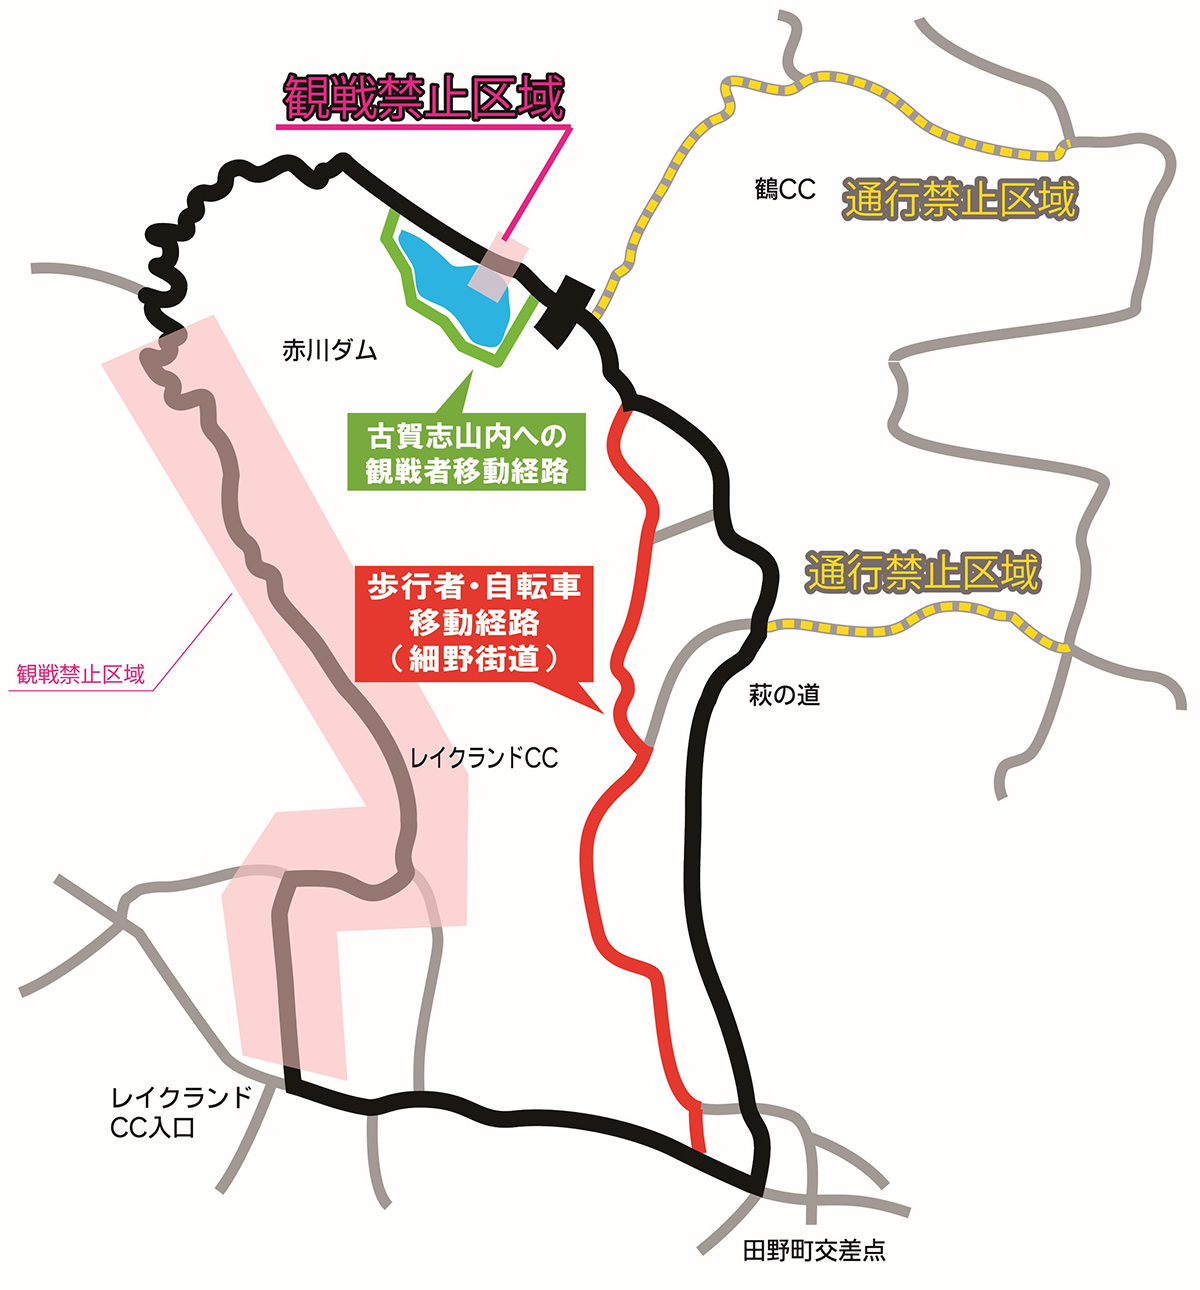 2019ロードレース 歩行者・自転車移動経路 案内図